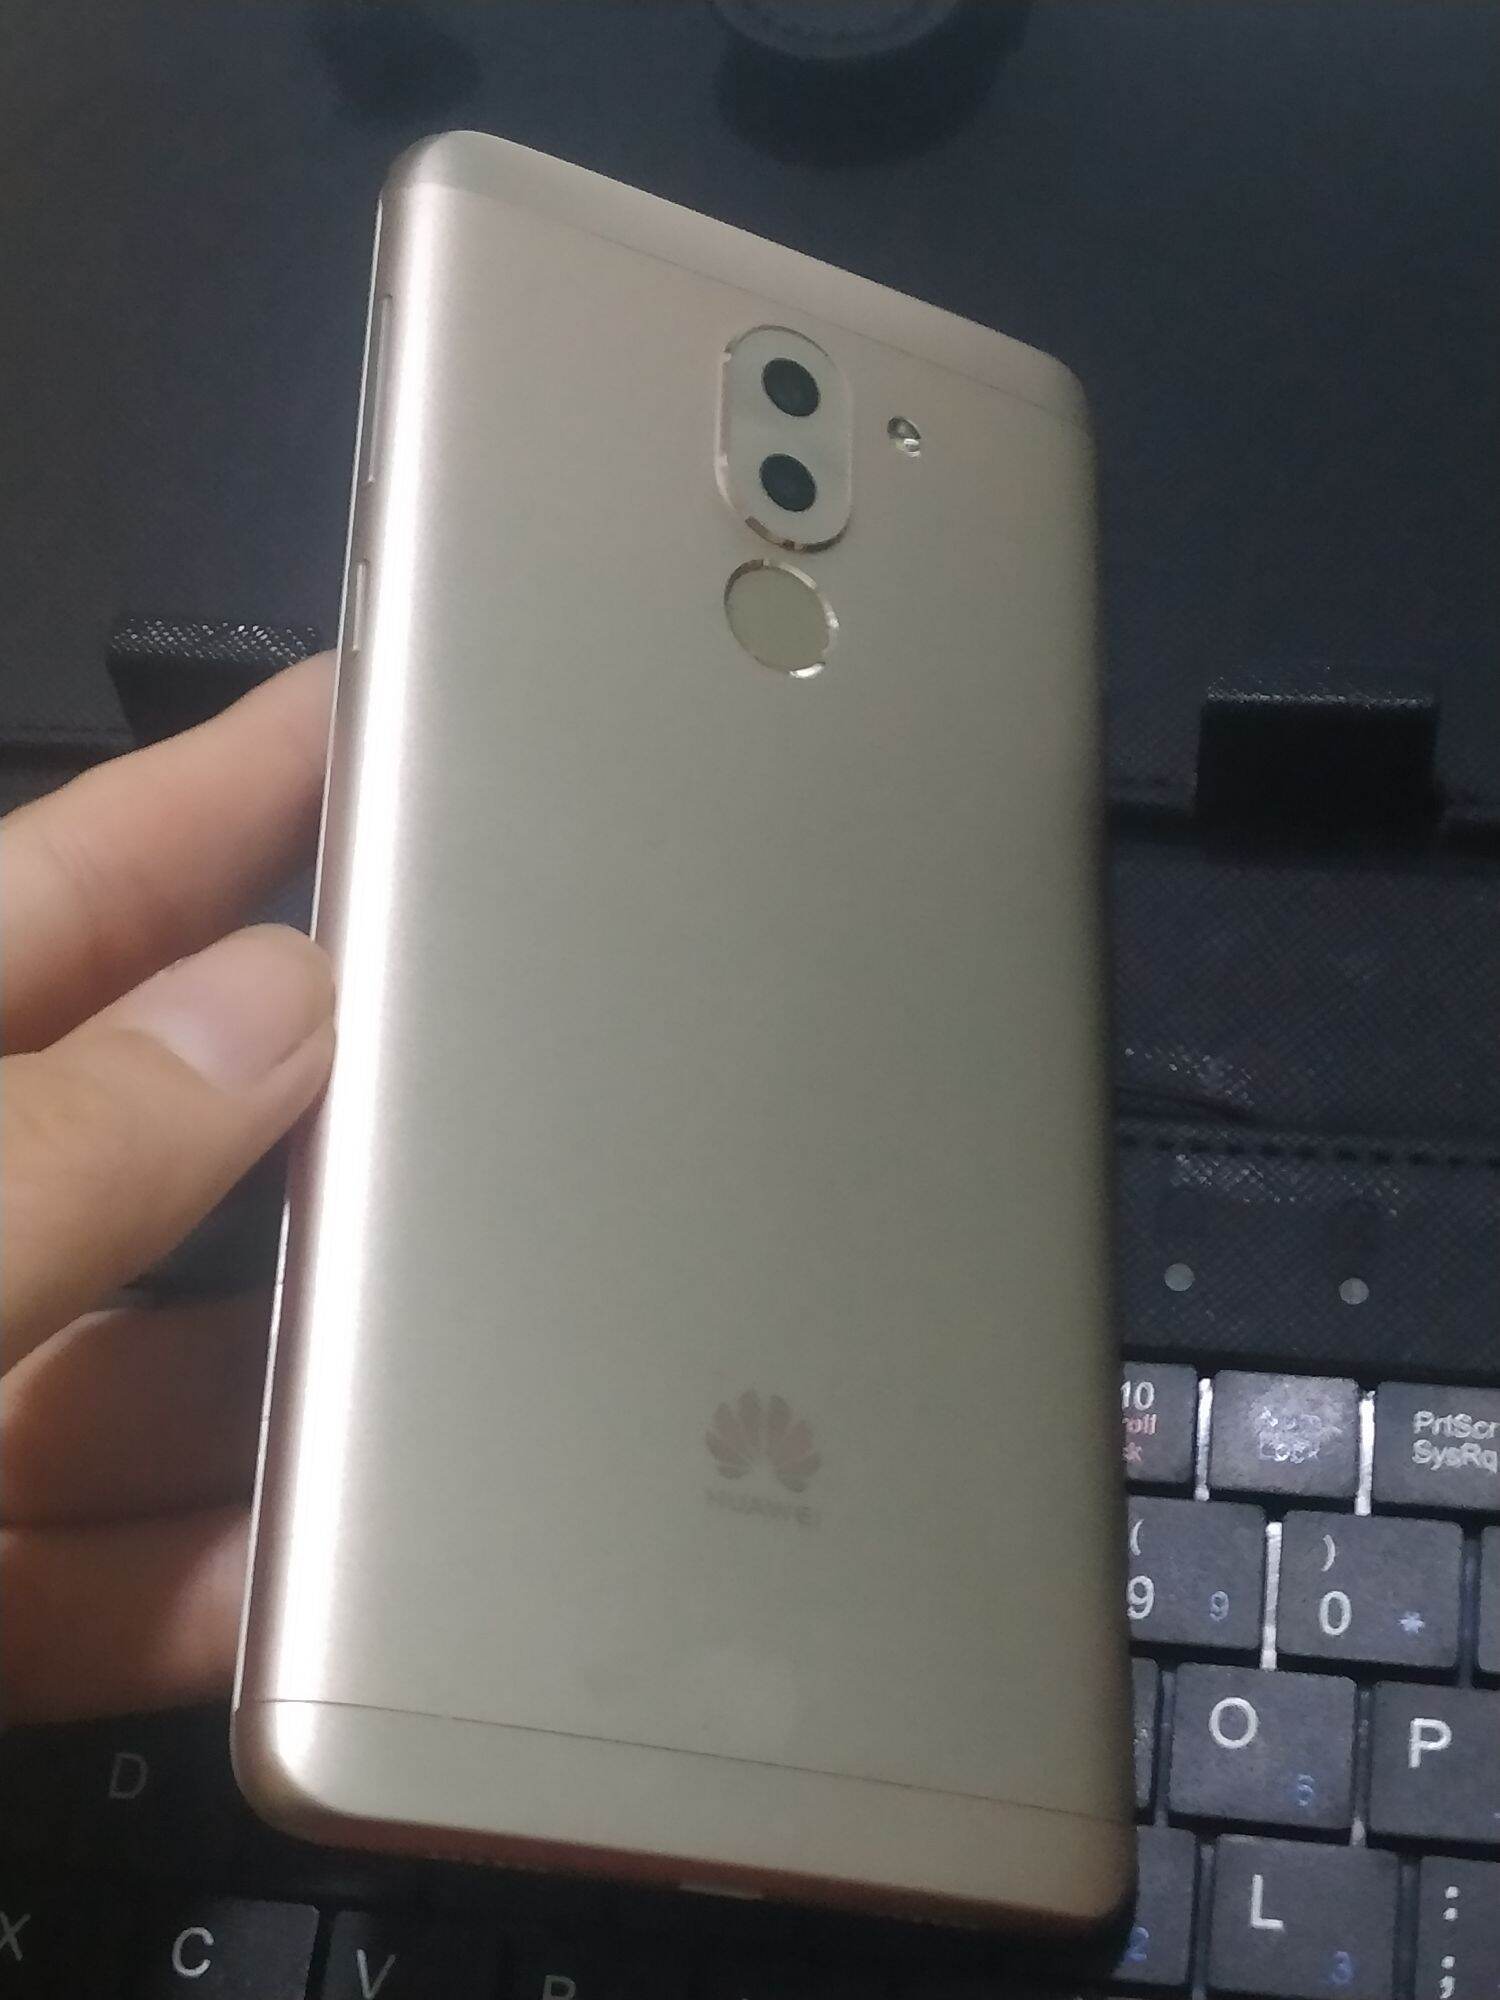 Huawei GR5 2017 Ngoại Hình Đẹp 4G Wifi Vân Tay Hoạt Động Tốt 3/32 Bộ nhớ